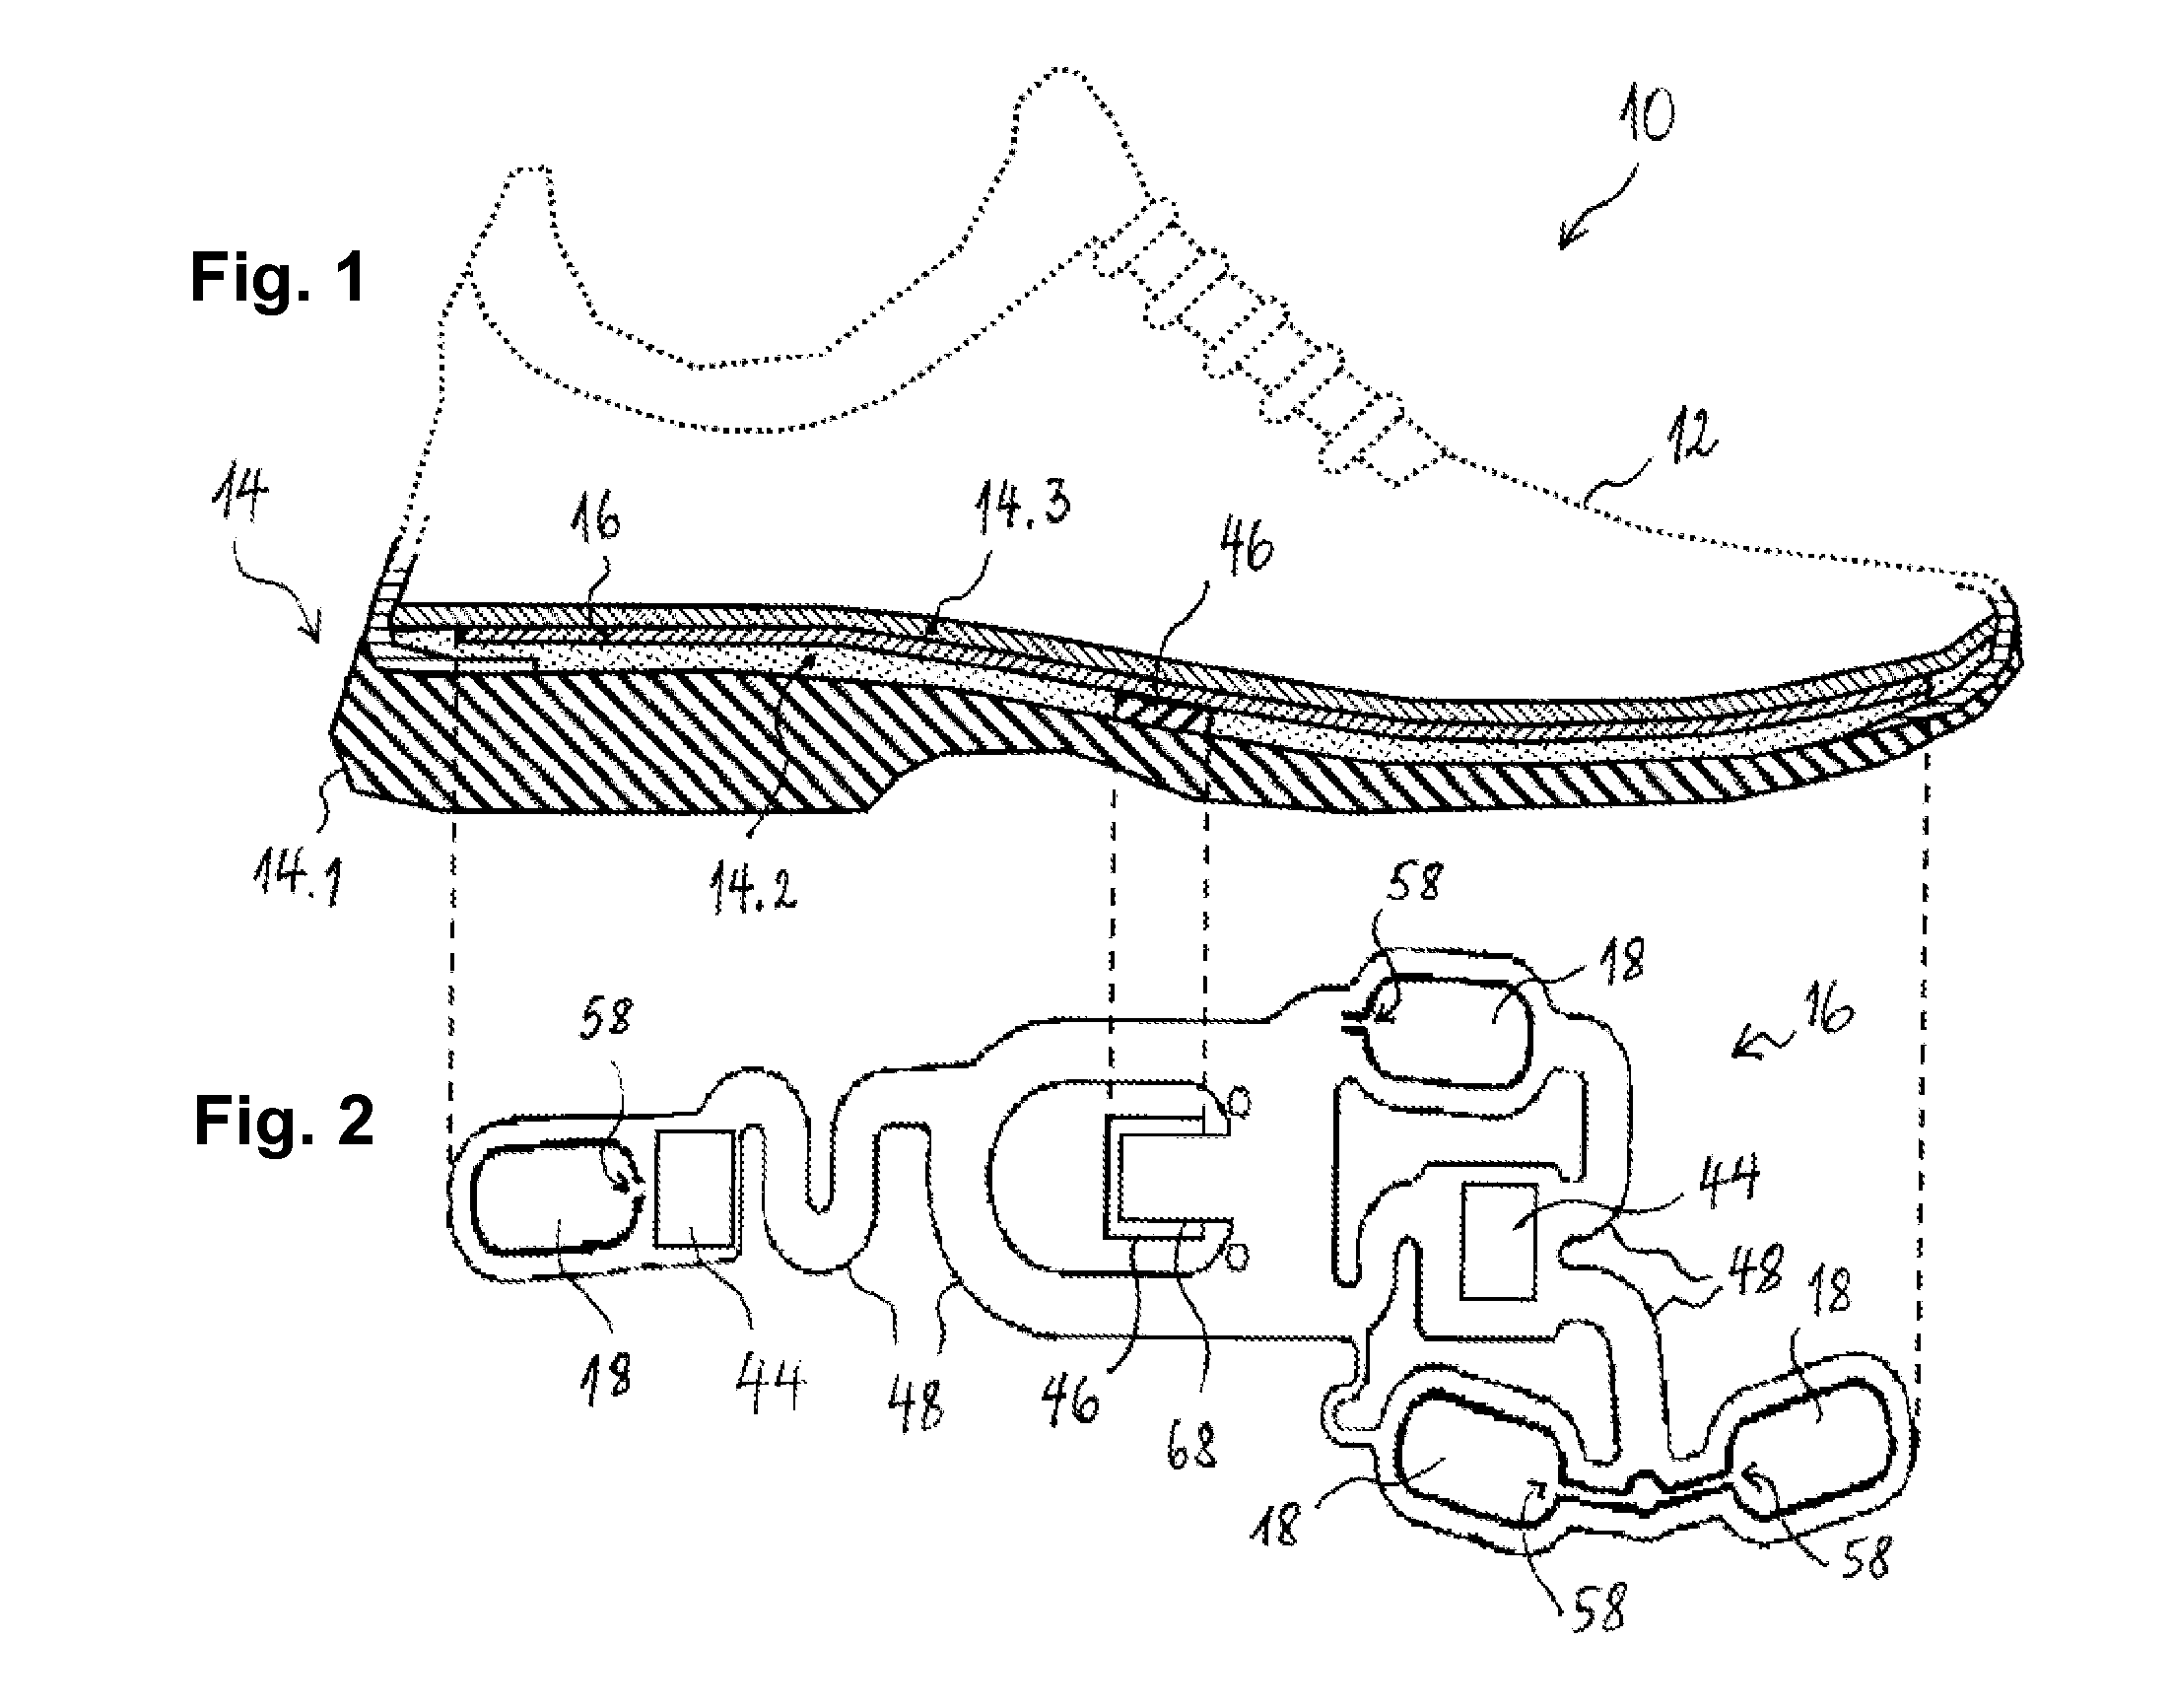 Footwear article with pressure sensor